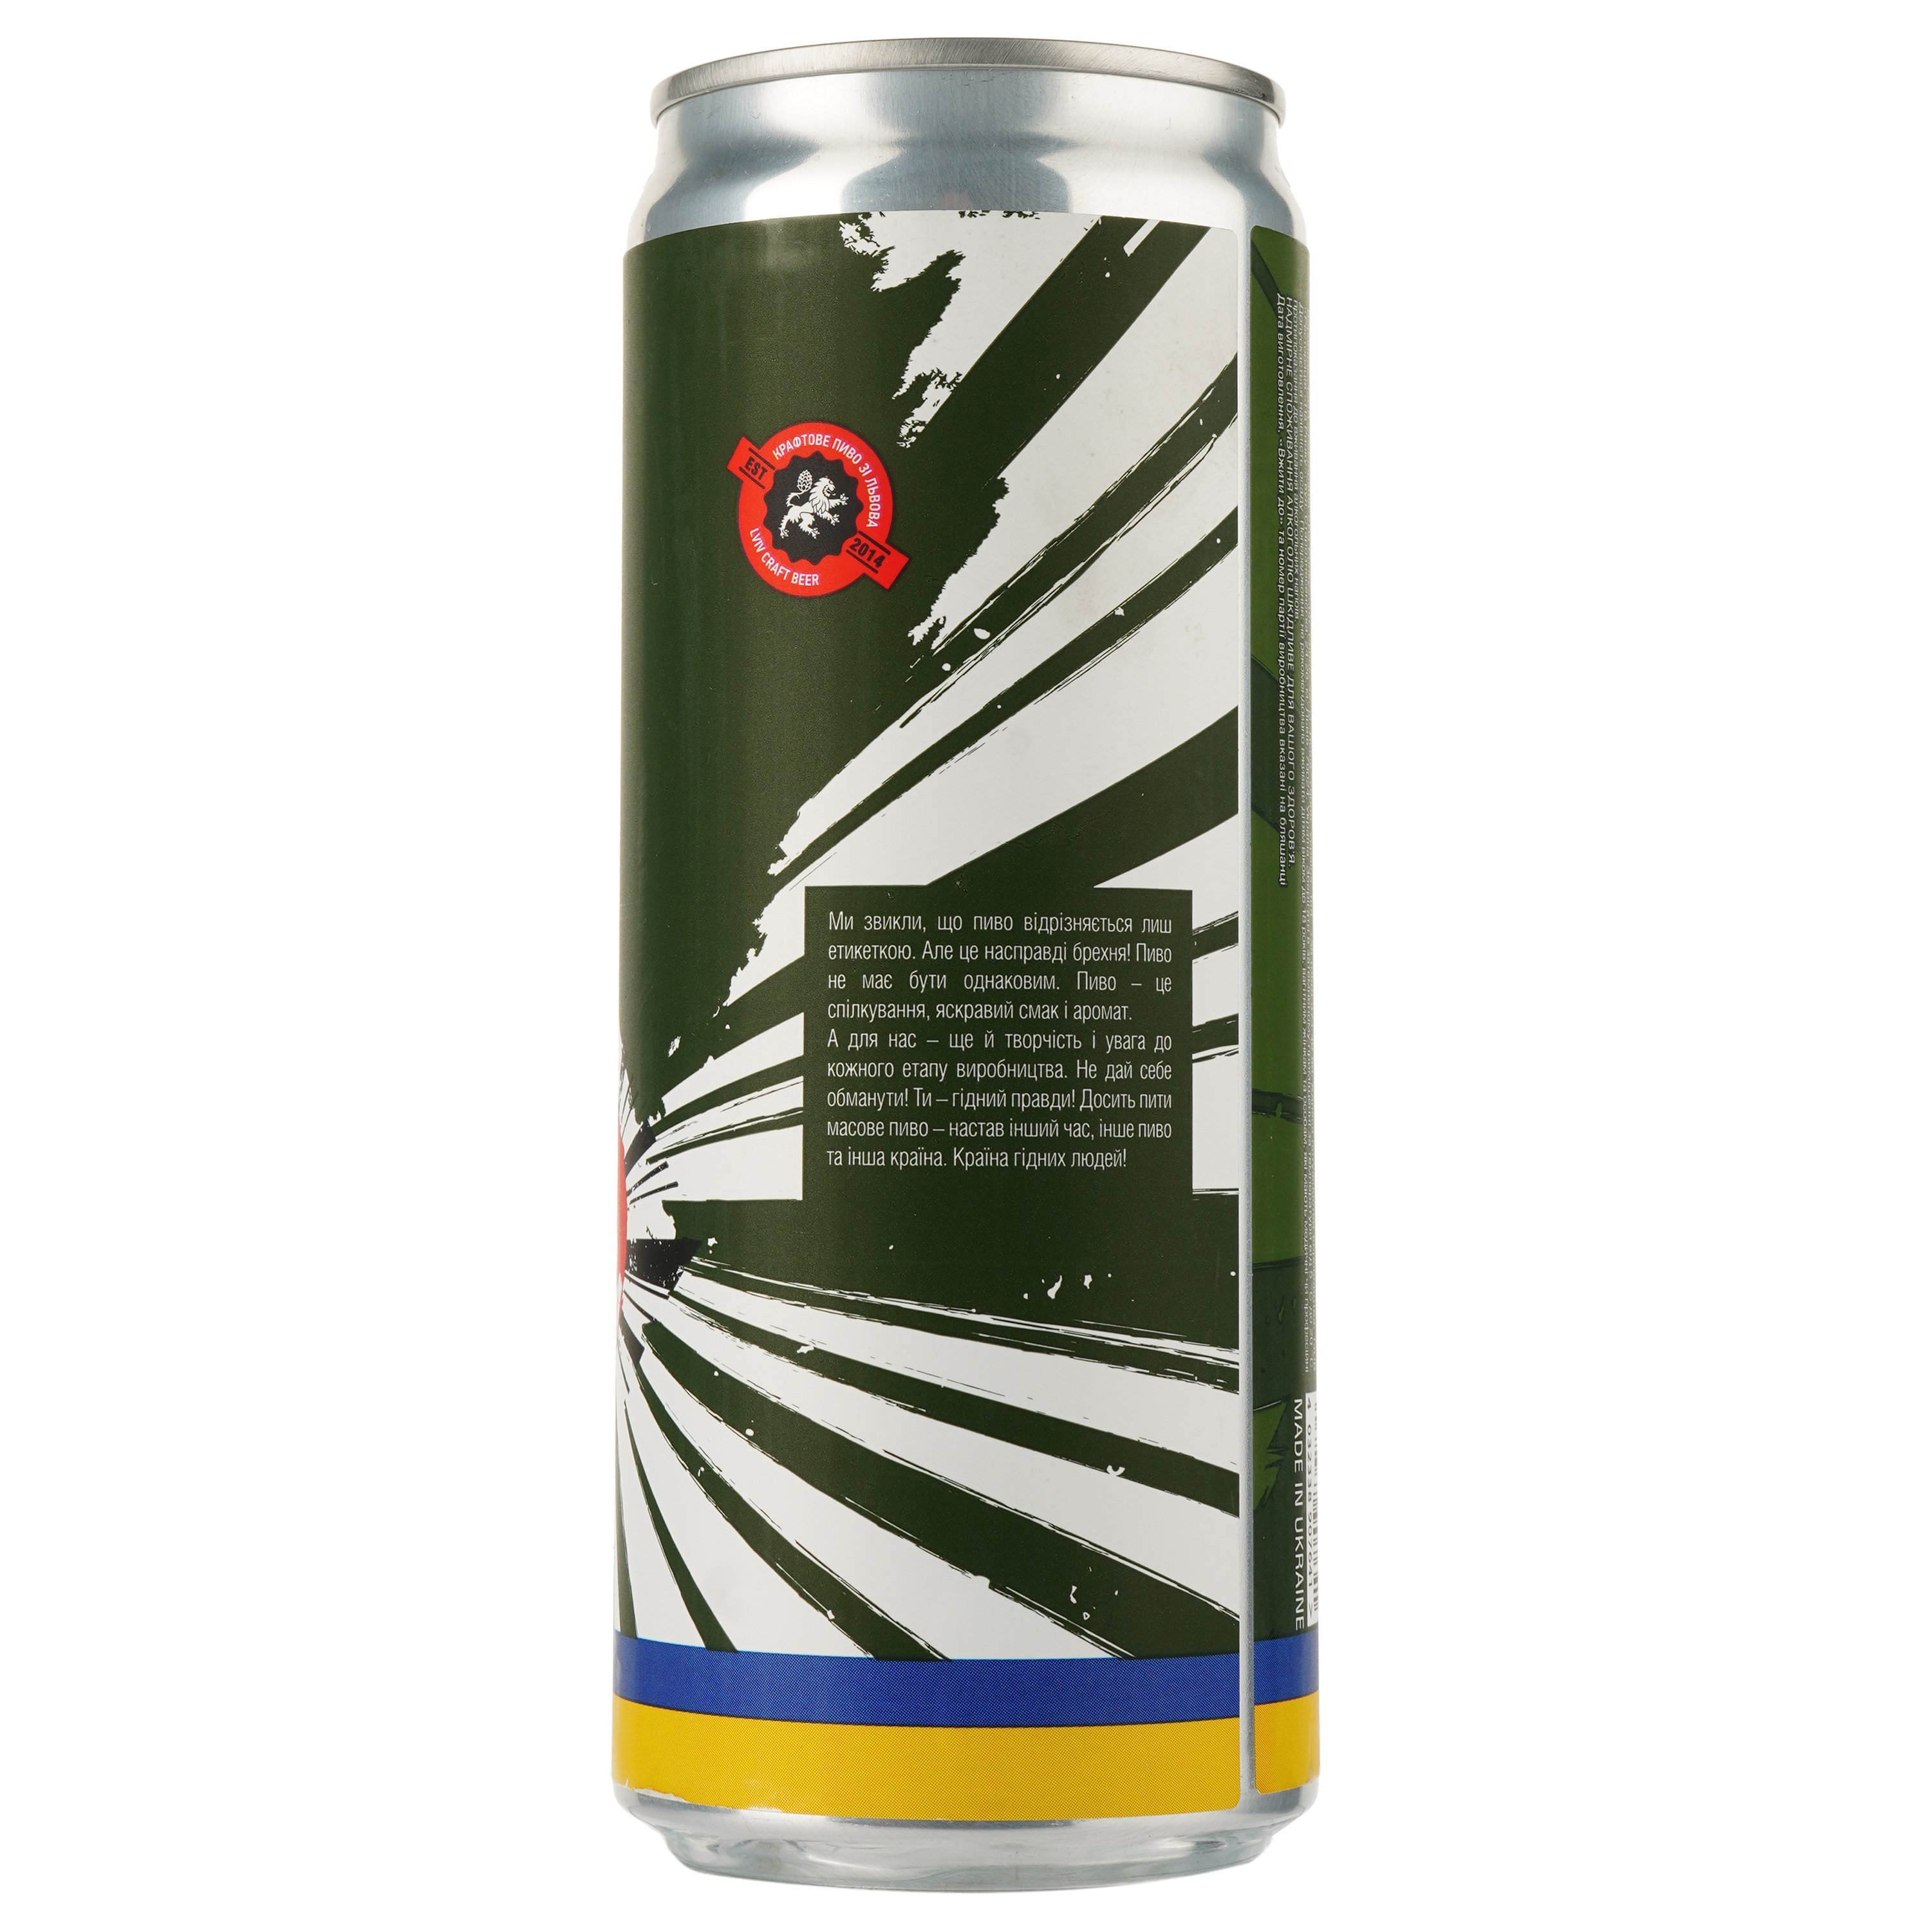 Пиво Правда Lviv Ipa, светлое, нефильтрованное, 4%, ж/б, 0,33 л (913933) - фото 2